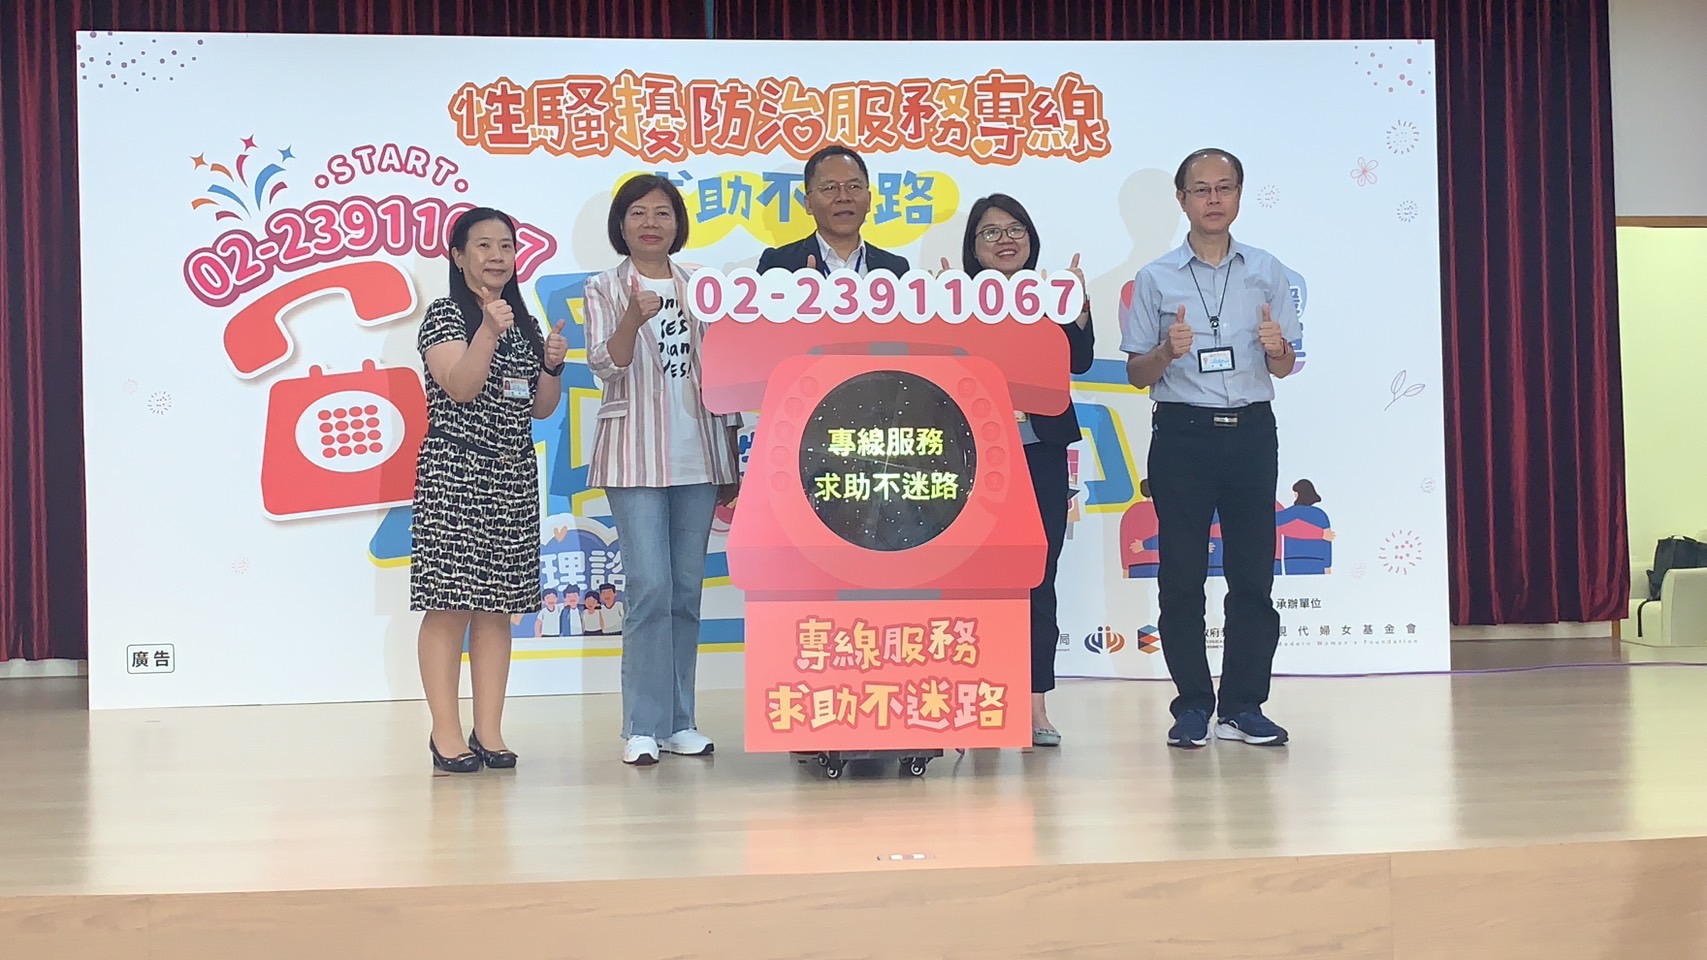 Pemerintah Kota Taipei telah membuat "Layanan Pencegahan Pelecehan Seksual Hotline" untuk menyediakan layanan konsultasi bagi masyarakat.  (Sumber foto : 現代婦女基金會)